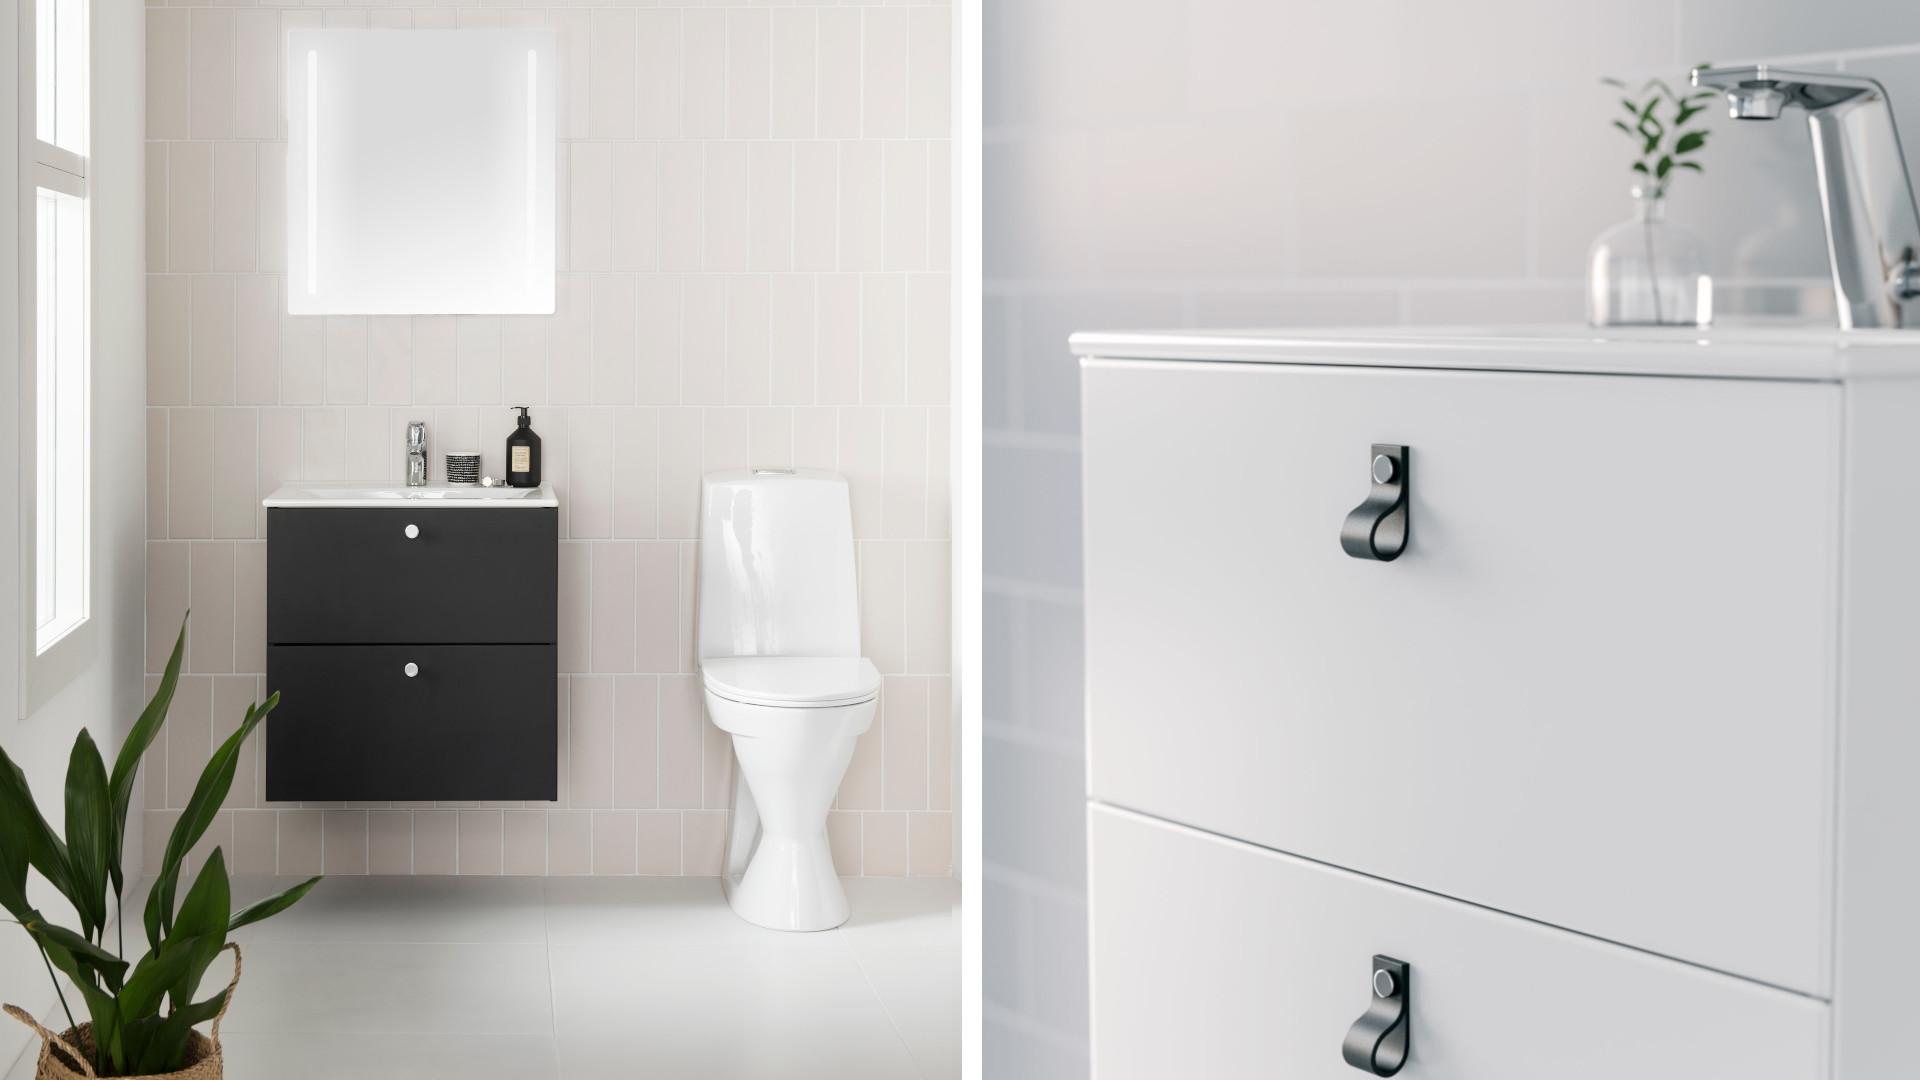 IDO Elegantin ohut tasoallas luo kylpyhuoneeseen keveyttä ja modernia ilmettä.